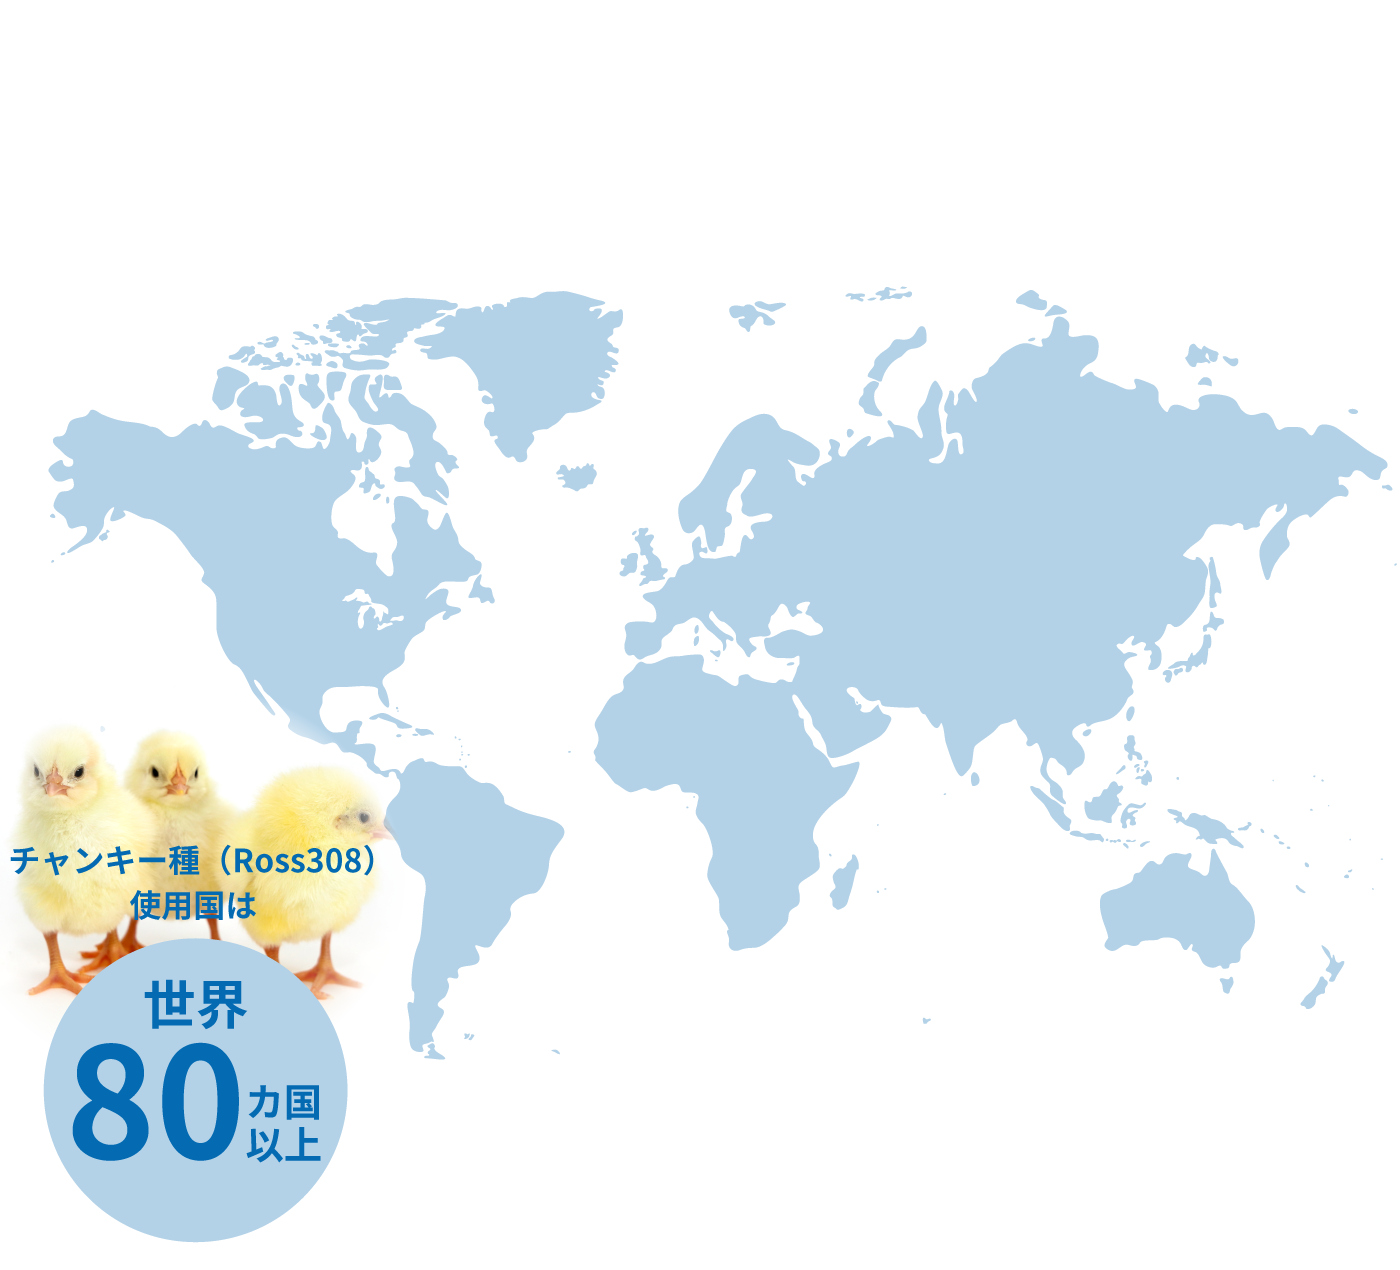 チャンキー種（Ross308）使用国は世界80ヵ国以上